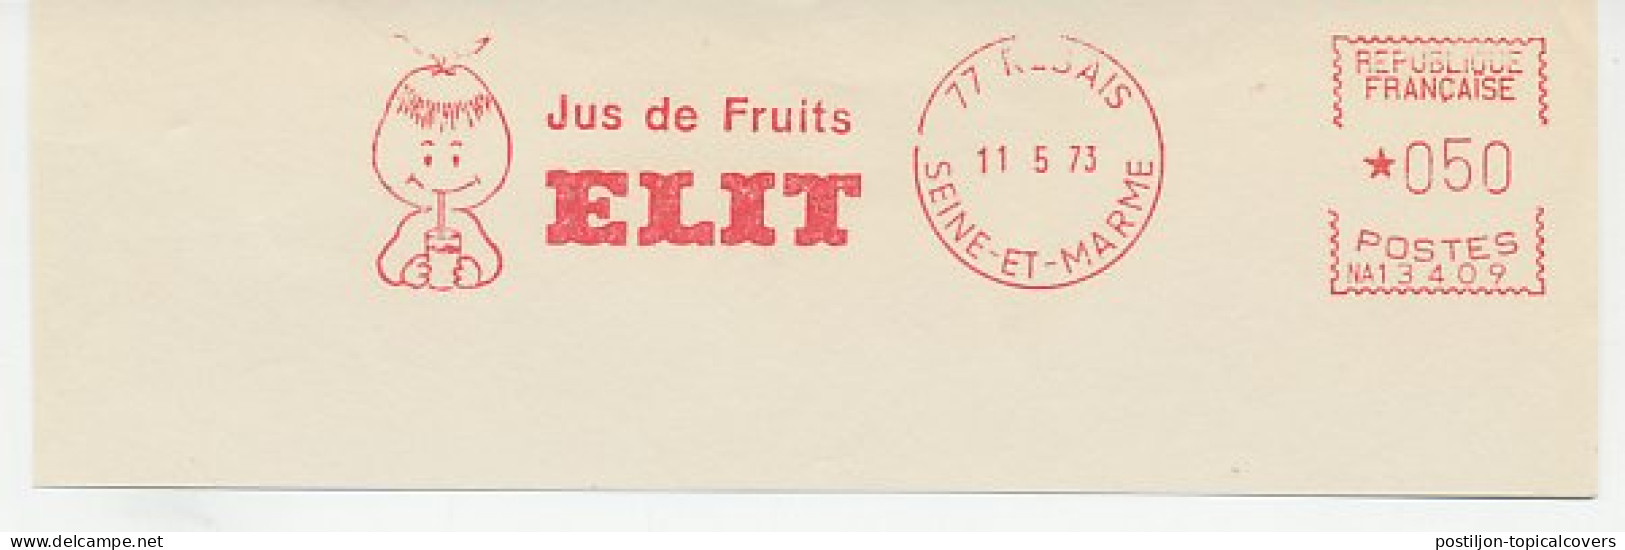 Meter Cut France 1973 Fruit Drink - Fruits